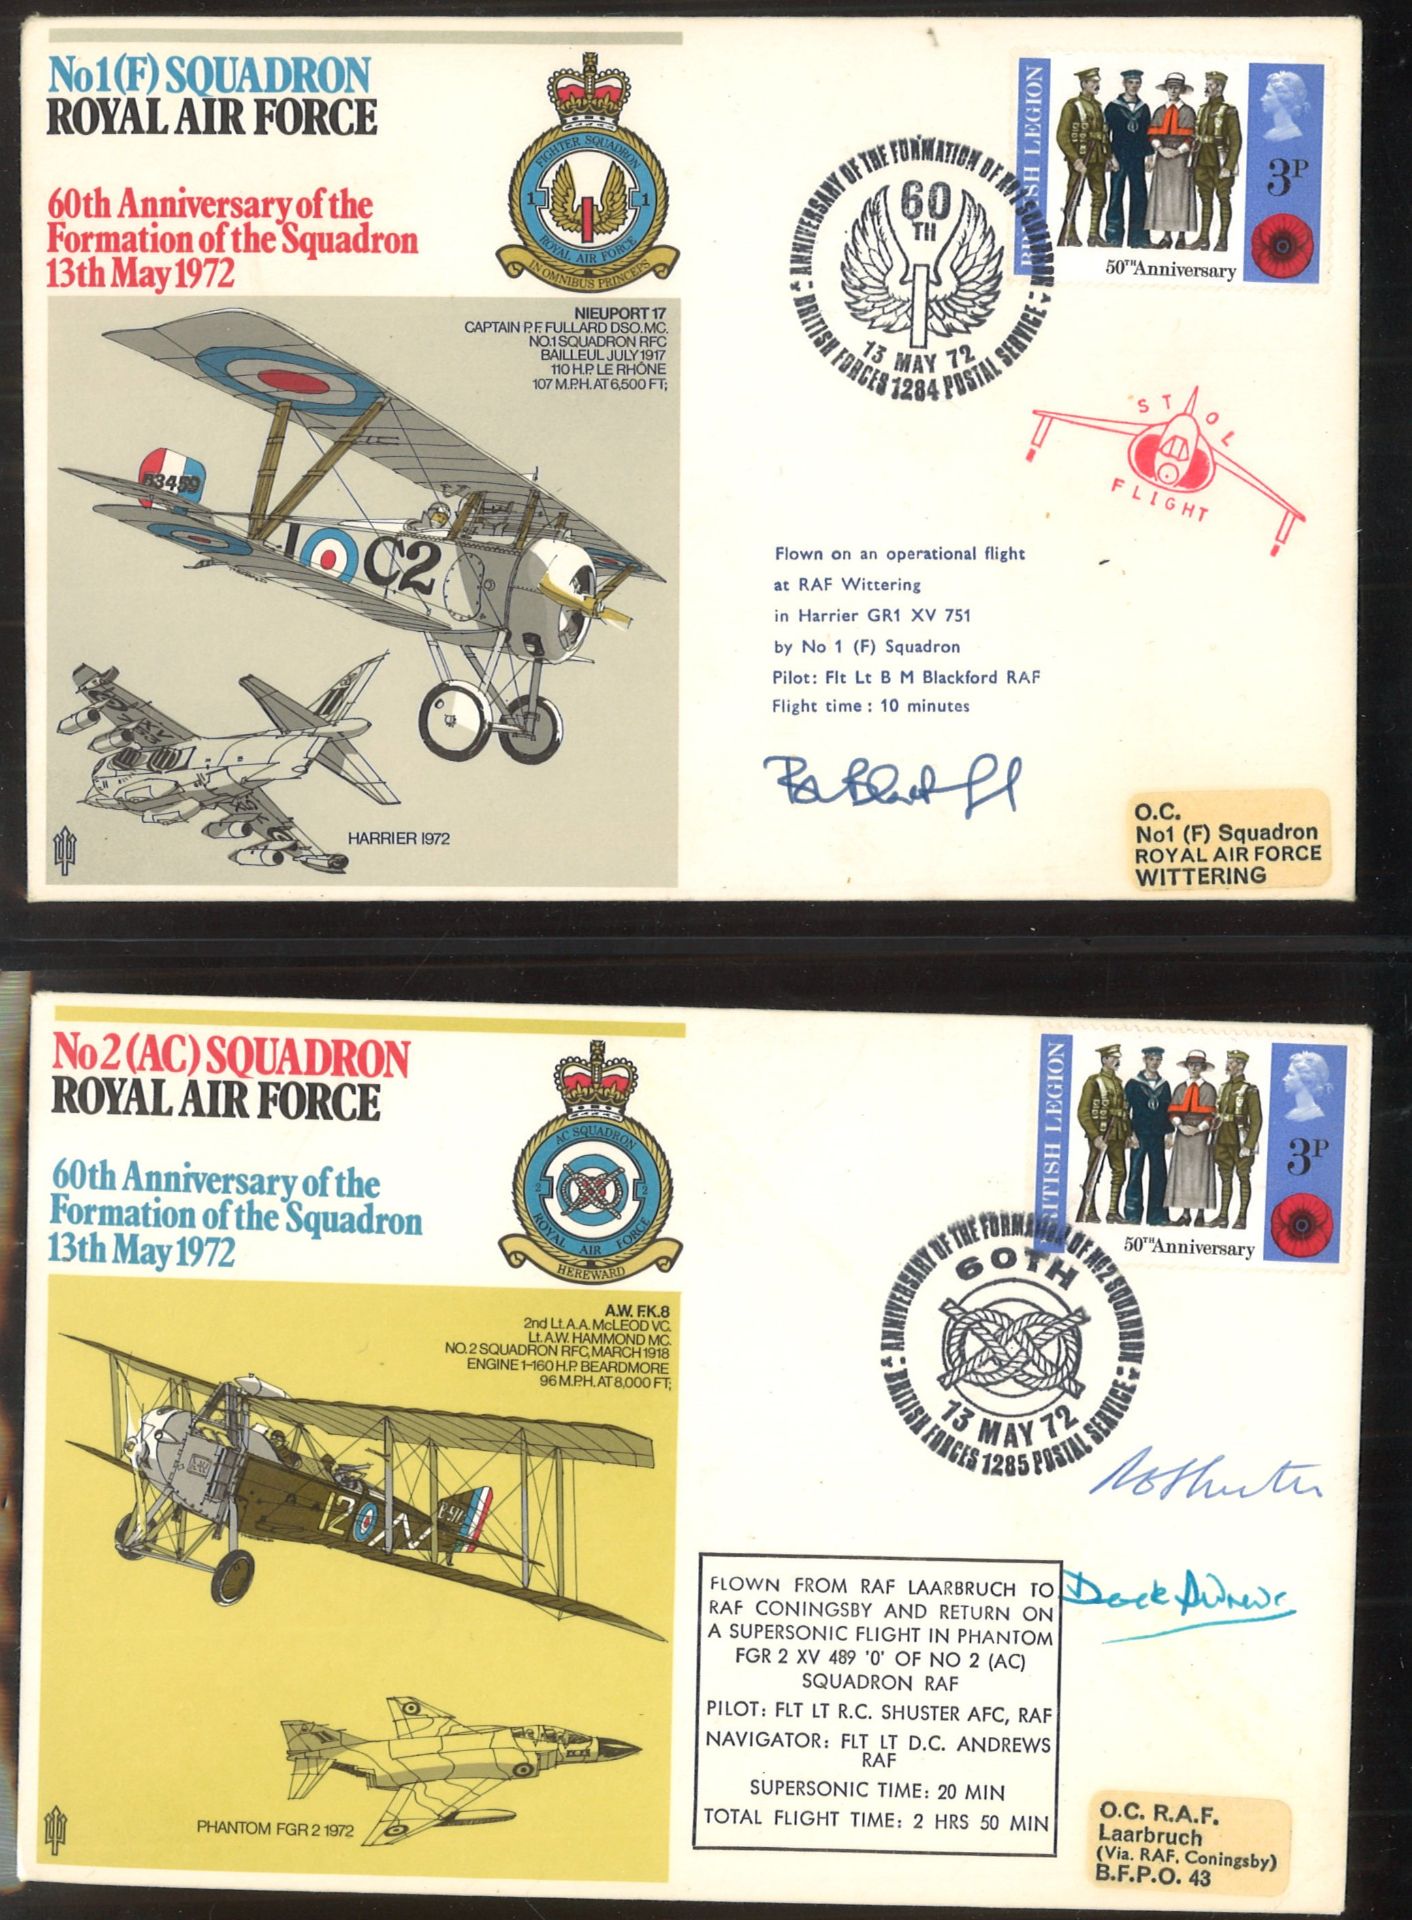 Briefealbum mit 52 Sonderbriefen Squardron Royal Air Force, alle Briefe handsigniert! schöne